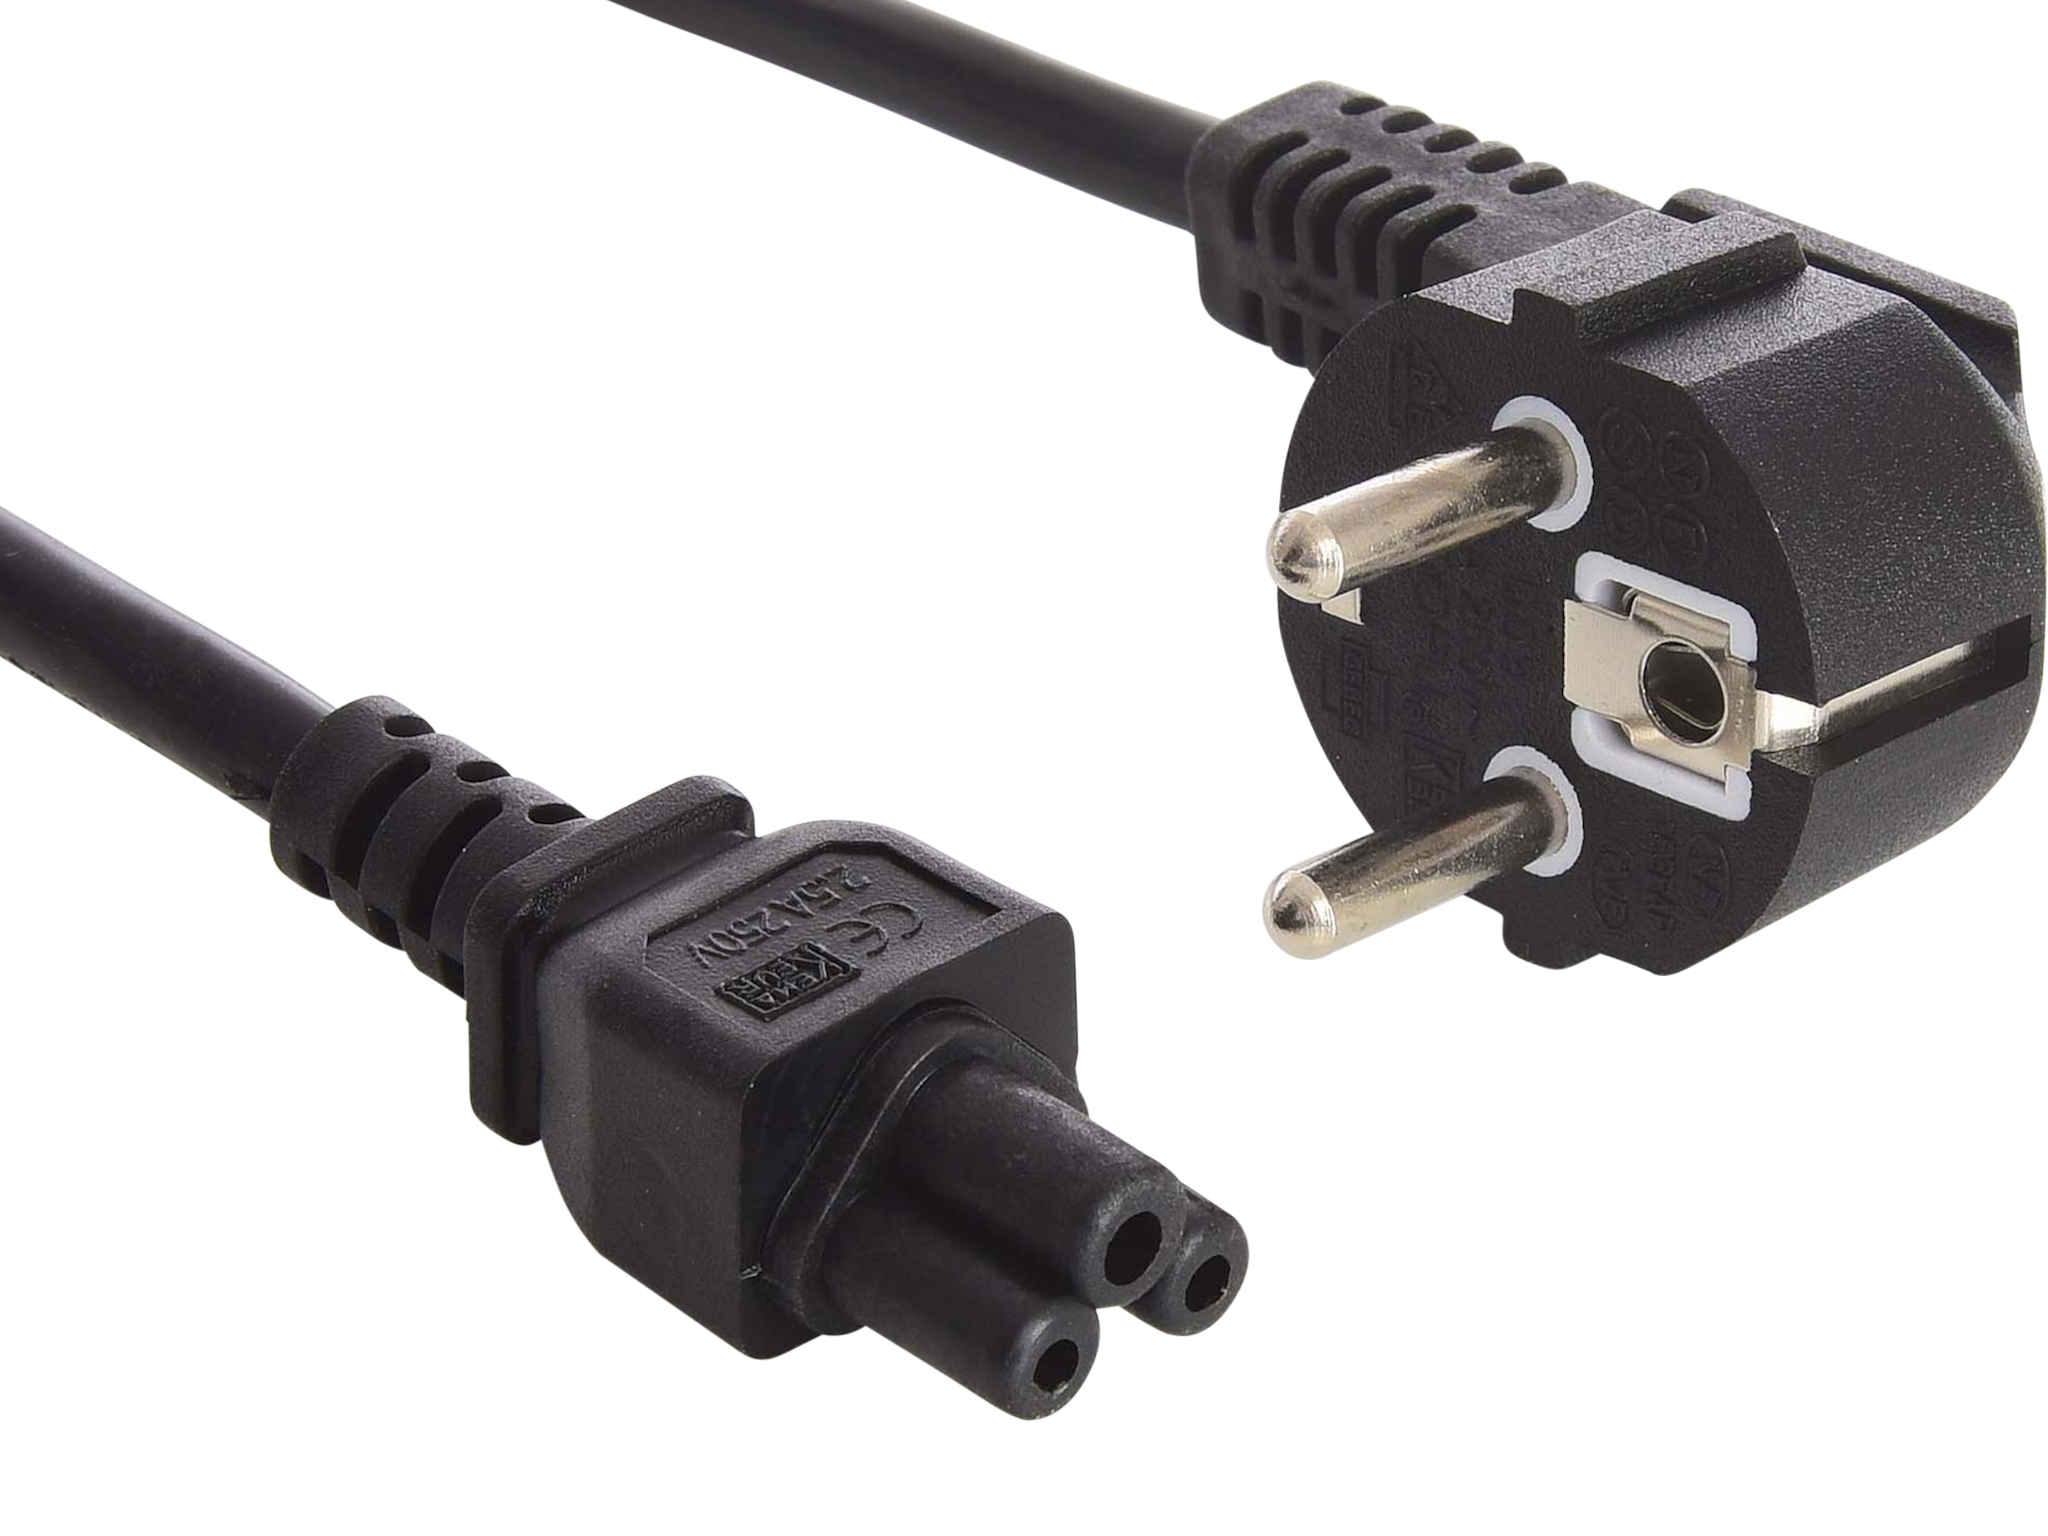 Кабель pc 2. Power Cord - кабель питания 220v. Удлинитель кабеля питания 8m-8f. Кабель питания ATCOM at16134, 1.8м, 2 Pin. Voltman PC Power Cable 1.5m.